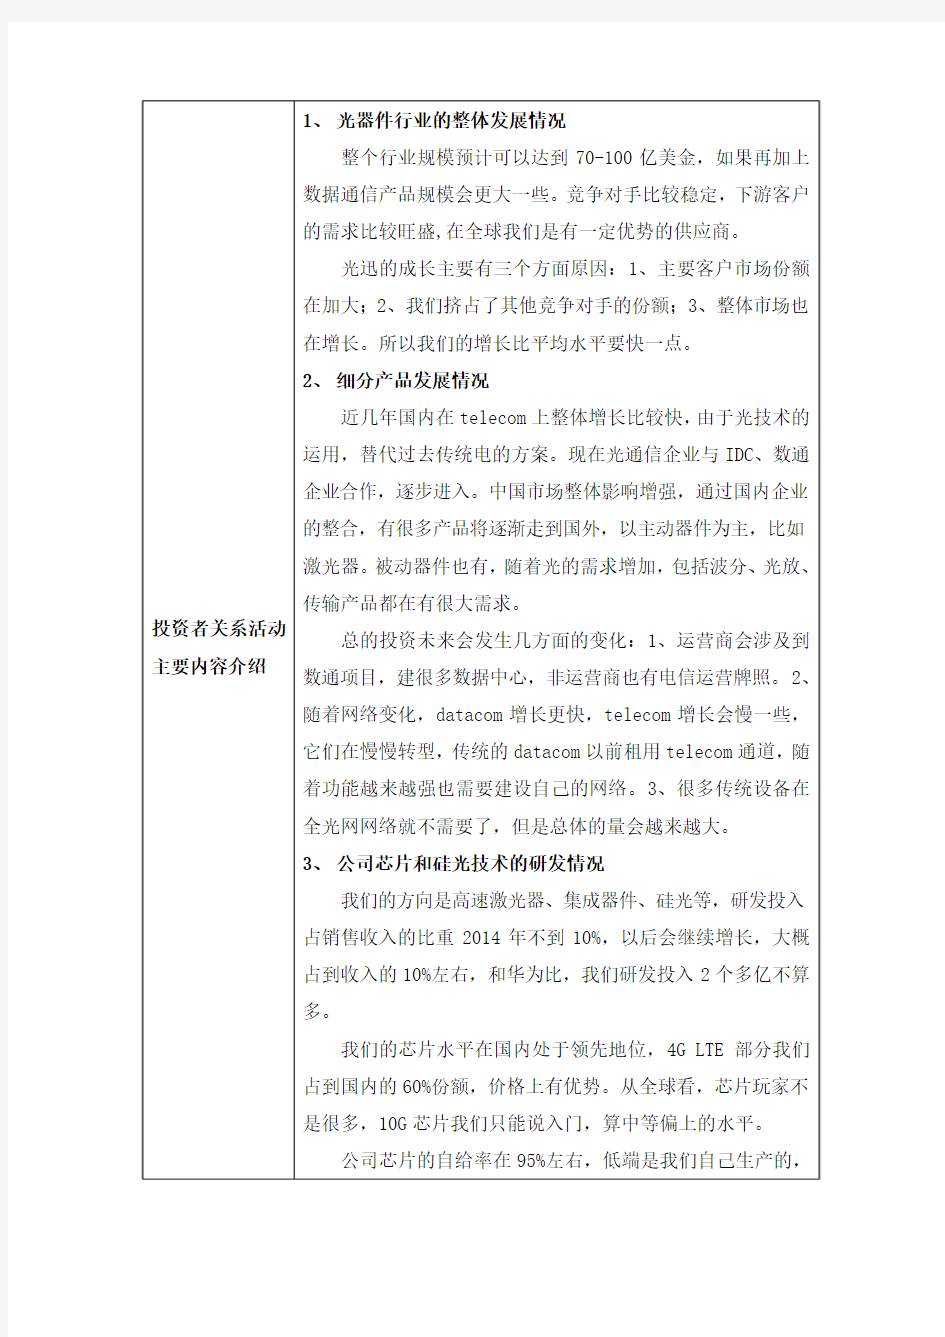 武汉光迅科技股份有限公司投资者关系活动记录表2015年8月27